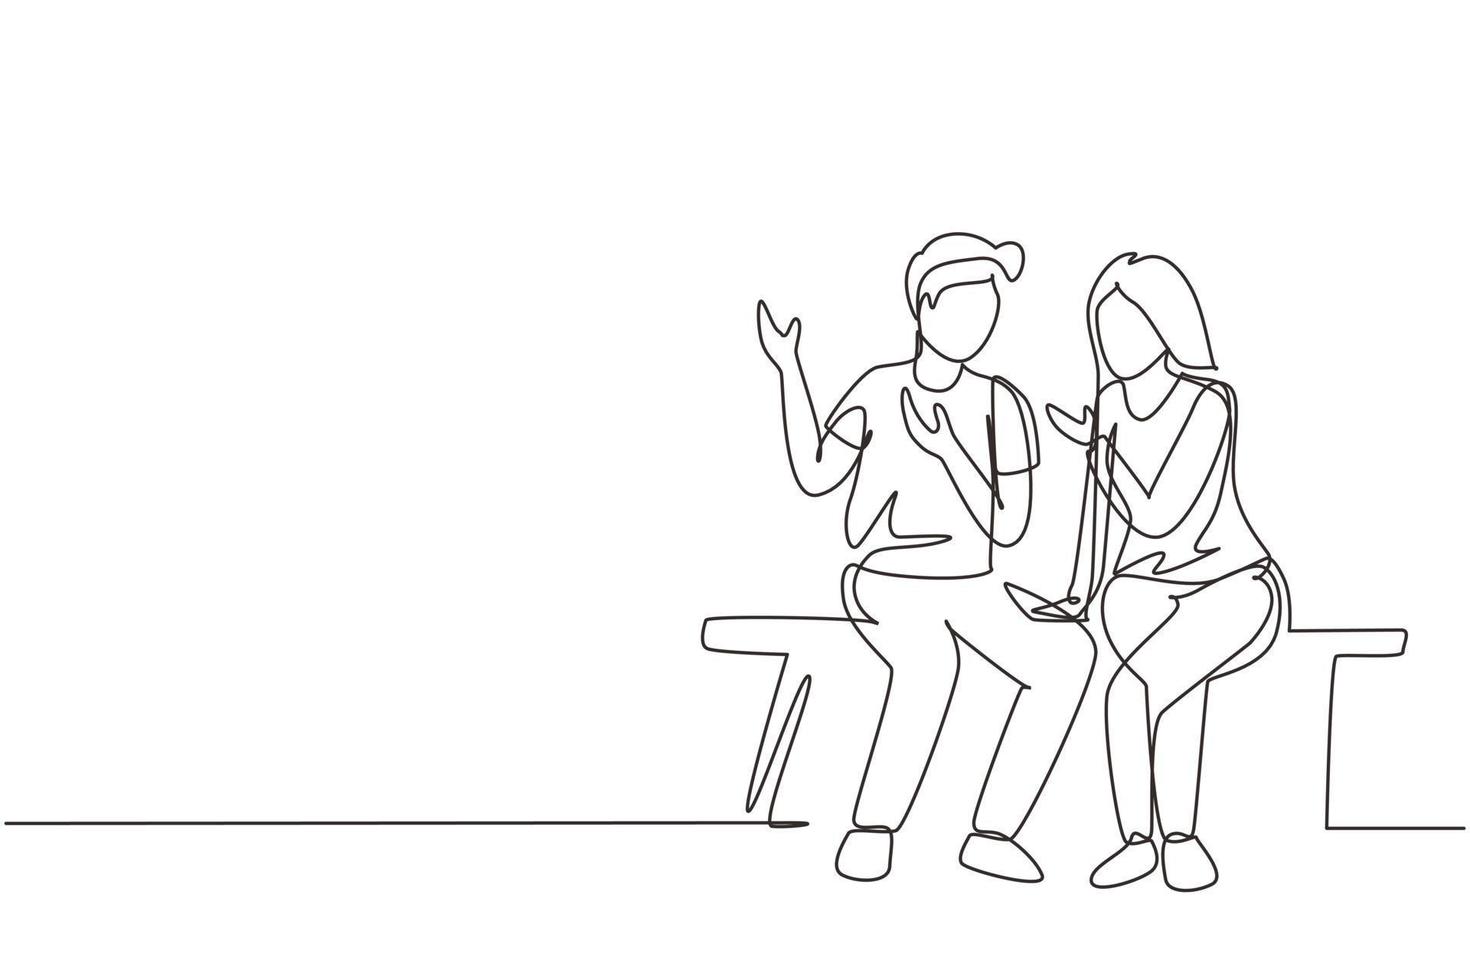 enda en rad ritning romantiskt par pratar medan du sitter på bänken. lyckligt par gör sig redo för bröllop. engagemang och kärleksrelation. kontinuerlig linje rita design grafisk vektorillustration vektor